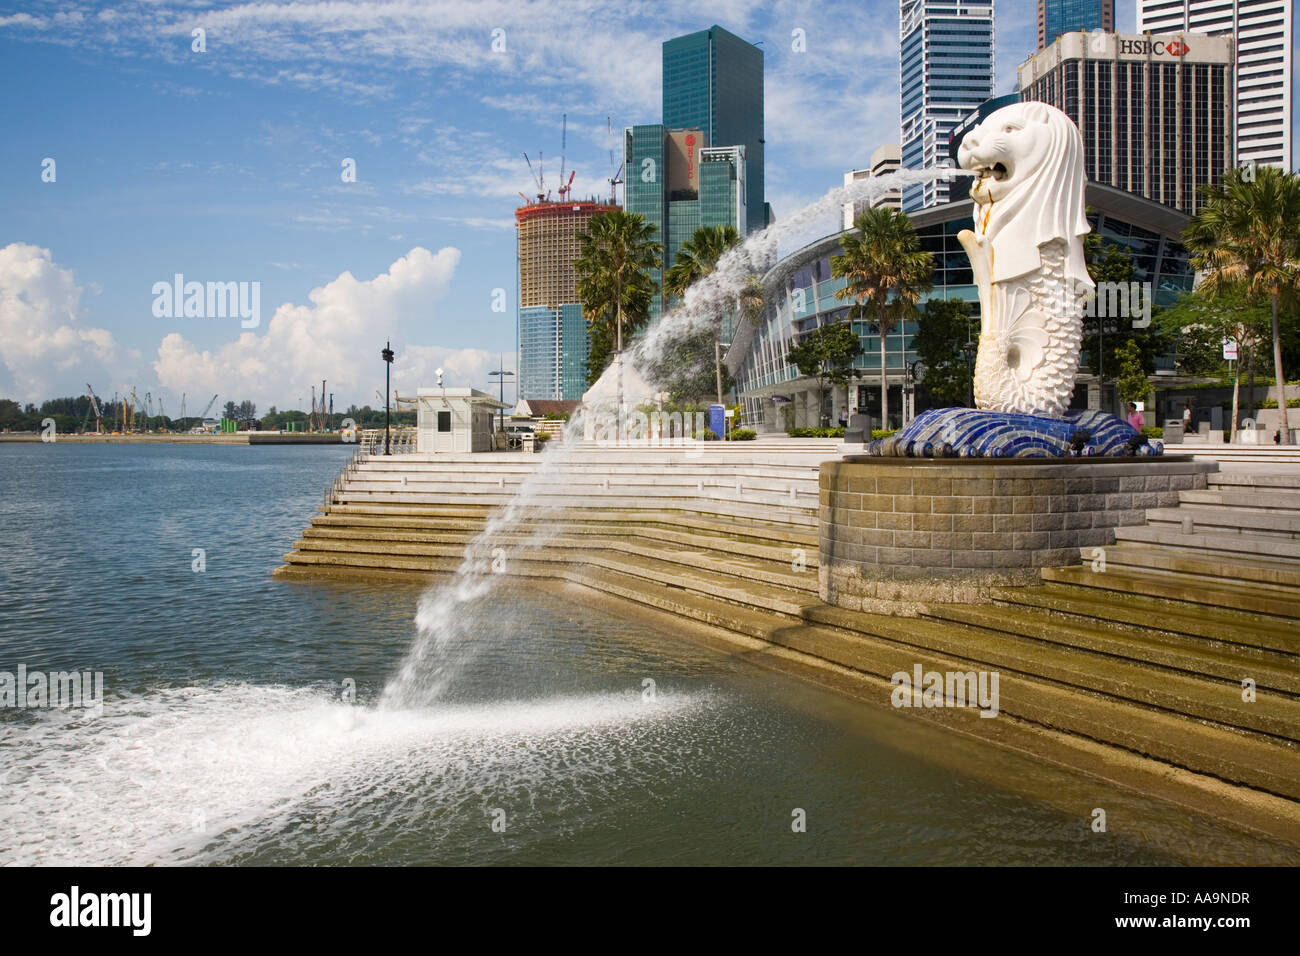 La statue du Merlion, symbole de Singapour sur la mer avec des bâtiments modernes dans le quartier d'affaires central derrière Banque D'Images